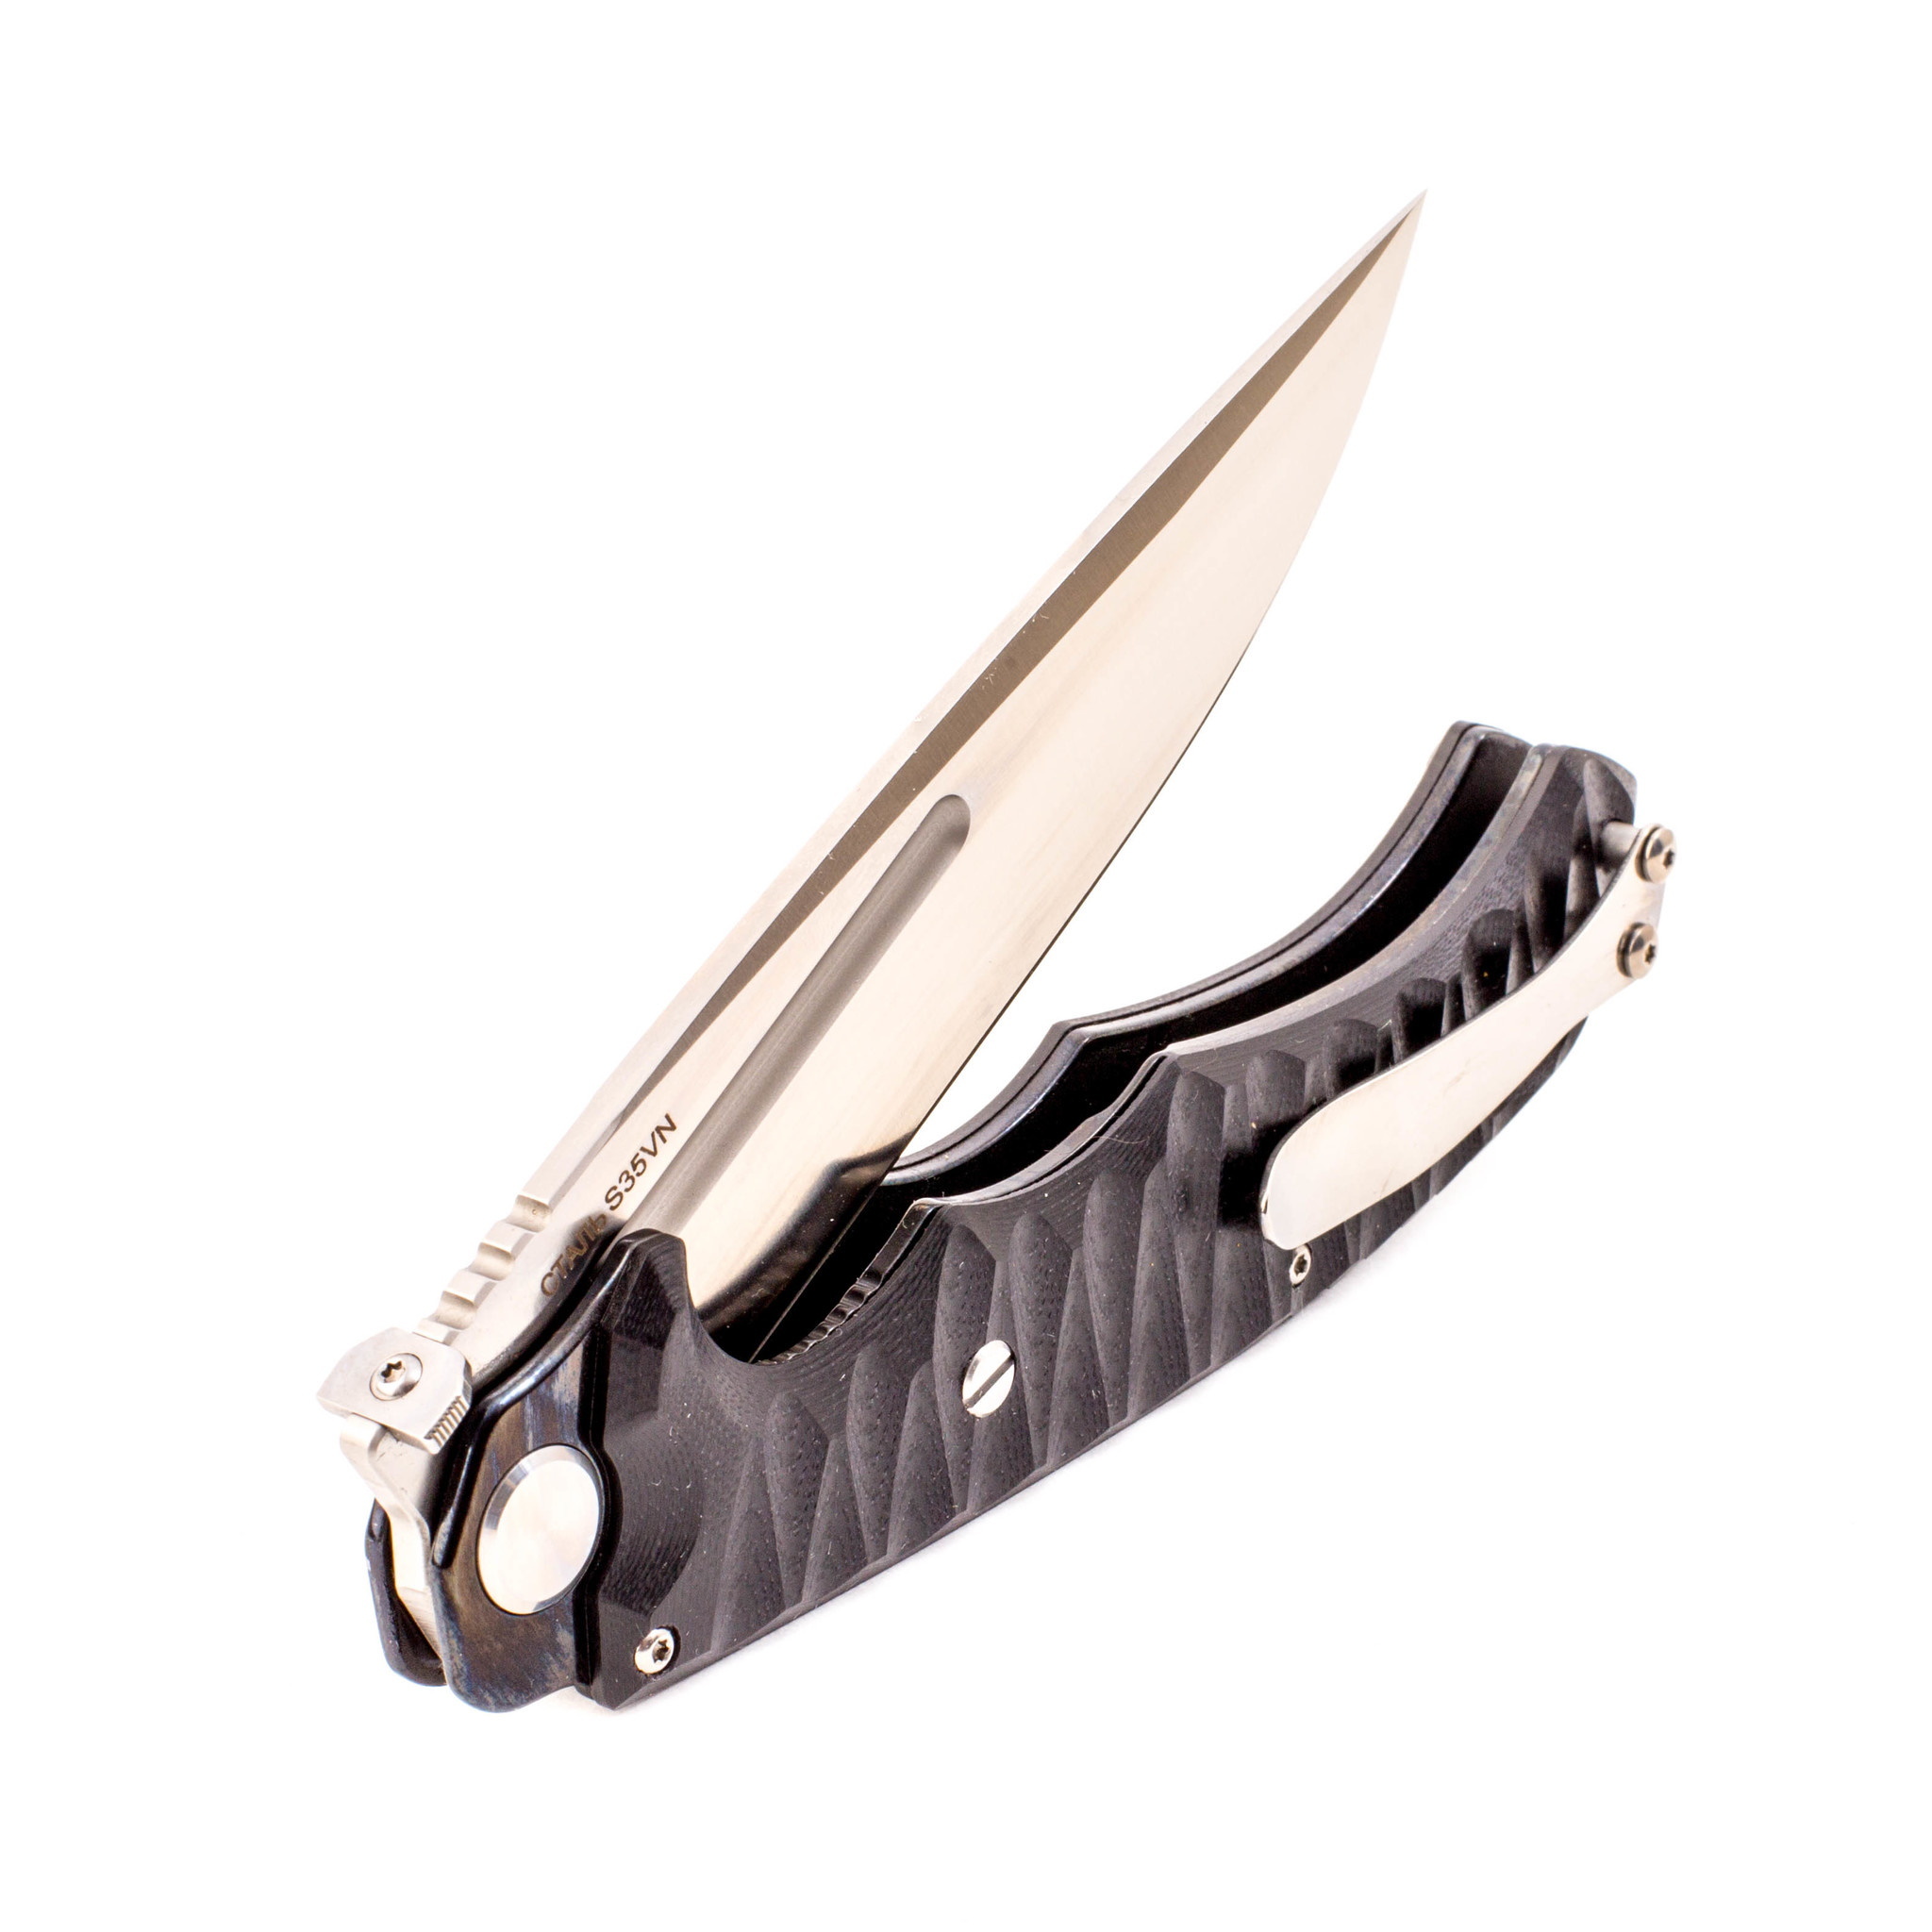 Нож нокс кугуар. Нокс Кугуар s35vn Титан. Нож Кугуар Нокс. Складные ножи Нокс Кугуар. Складной нож Кугуар, сталь d2, 259 мм.